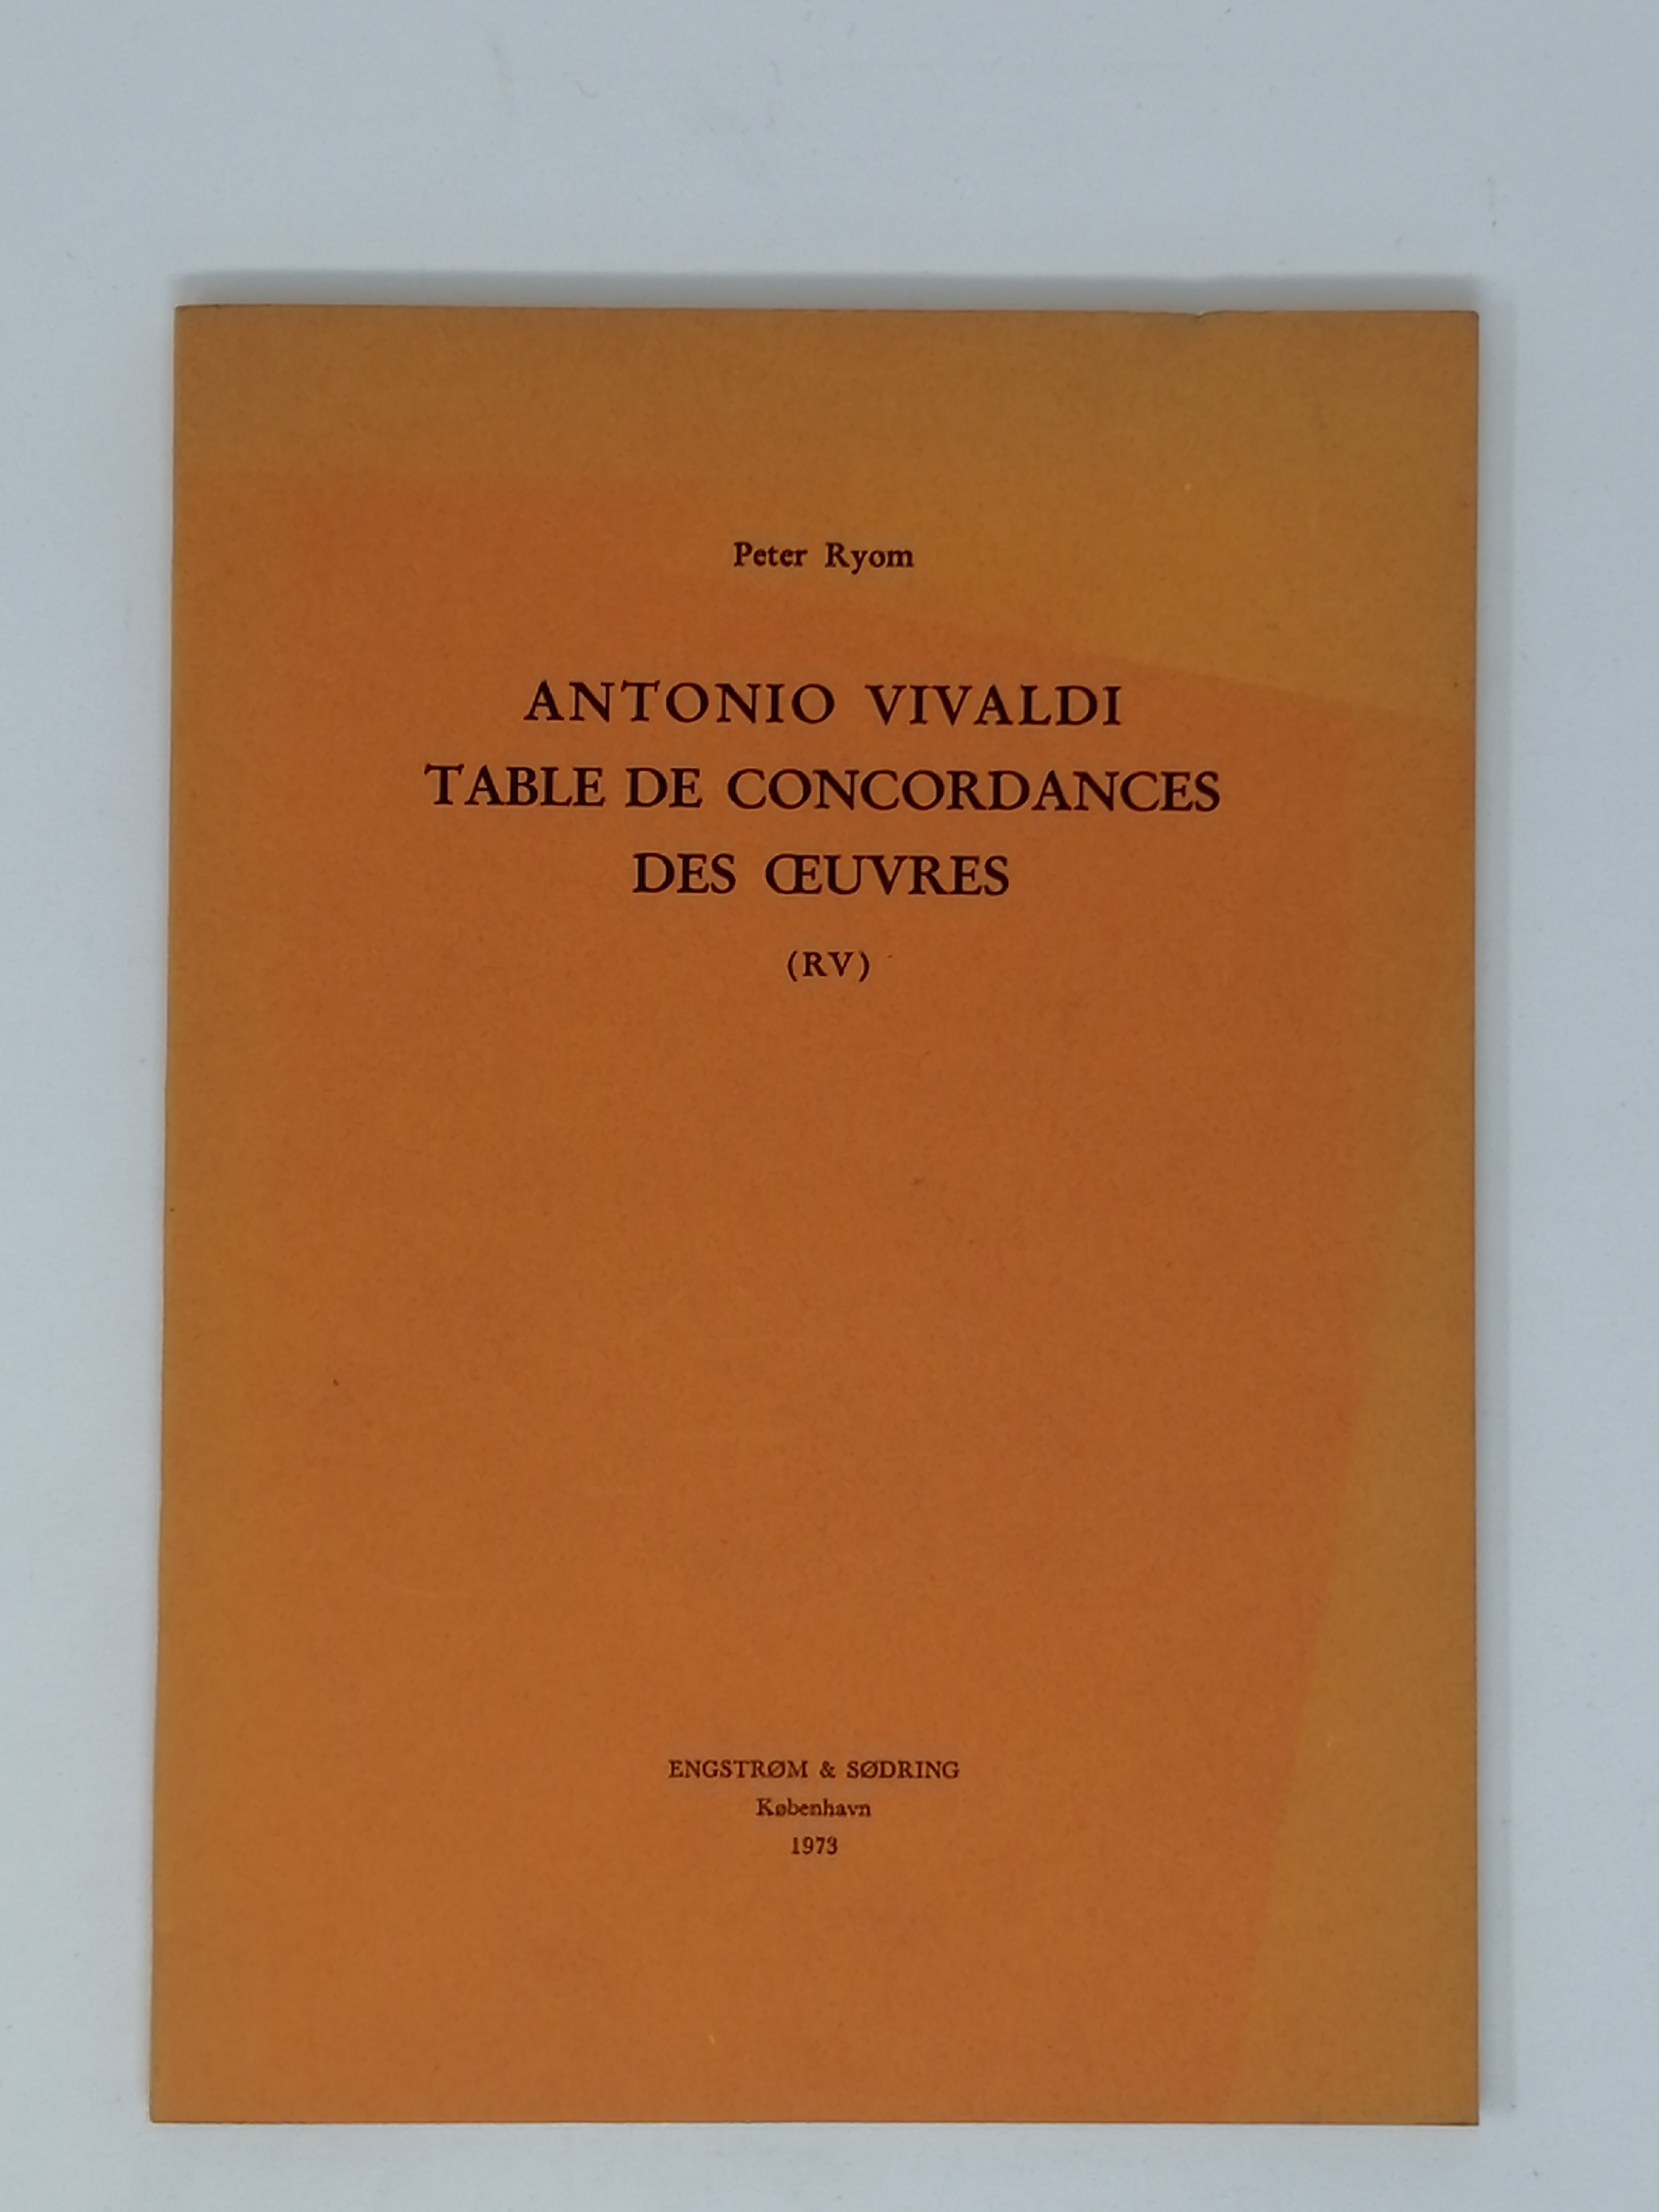 Antonio Vivaldi: Table De Concordances des Oeuvres (RV) - Peter Ryom.